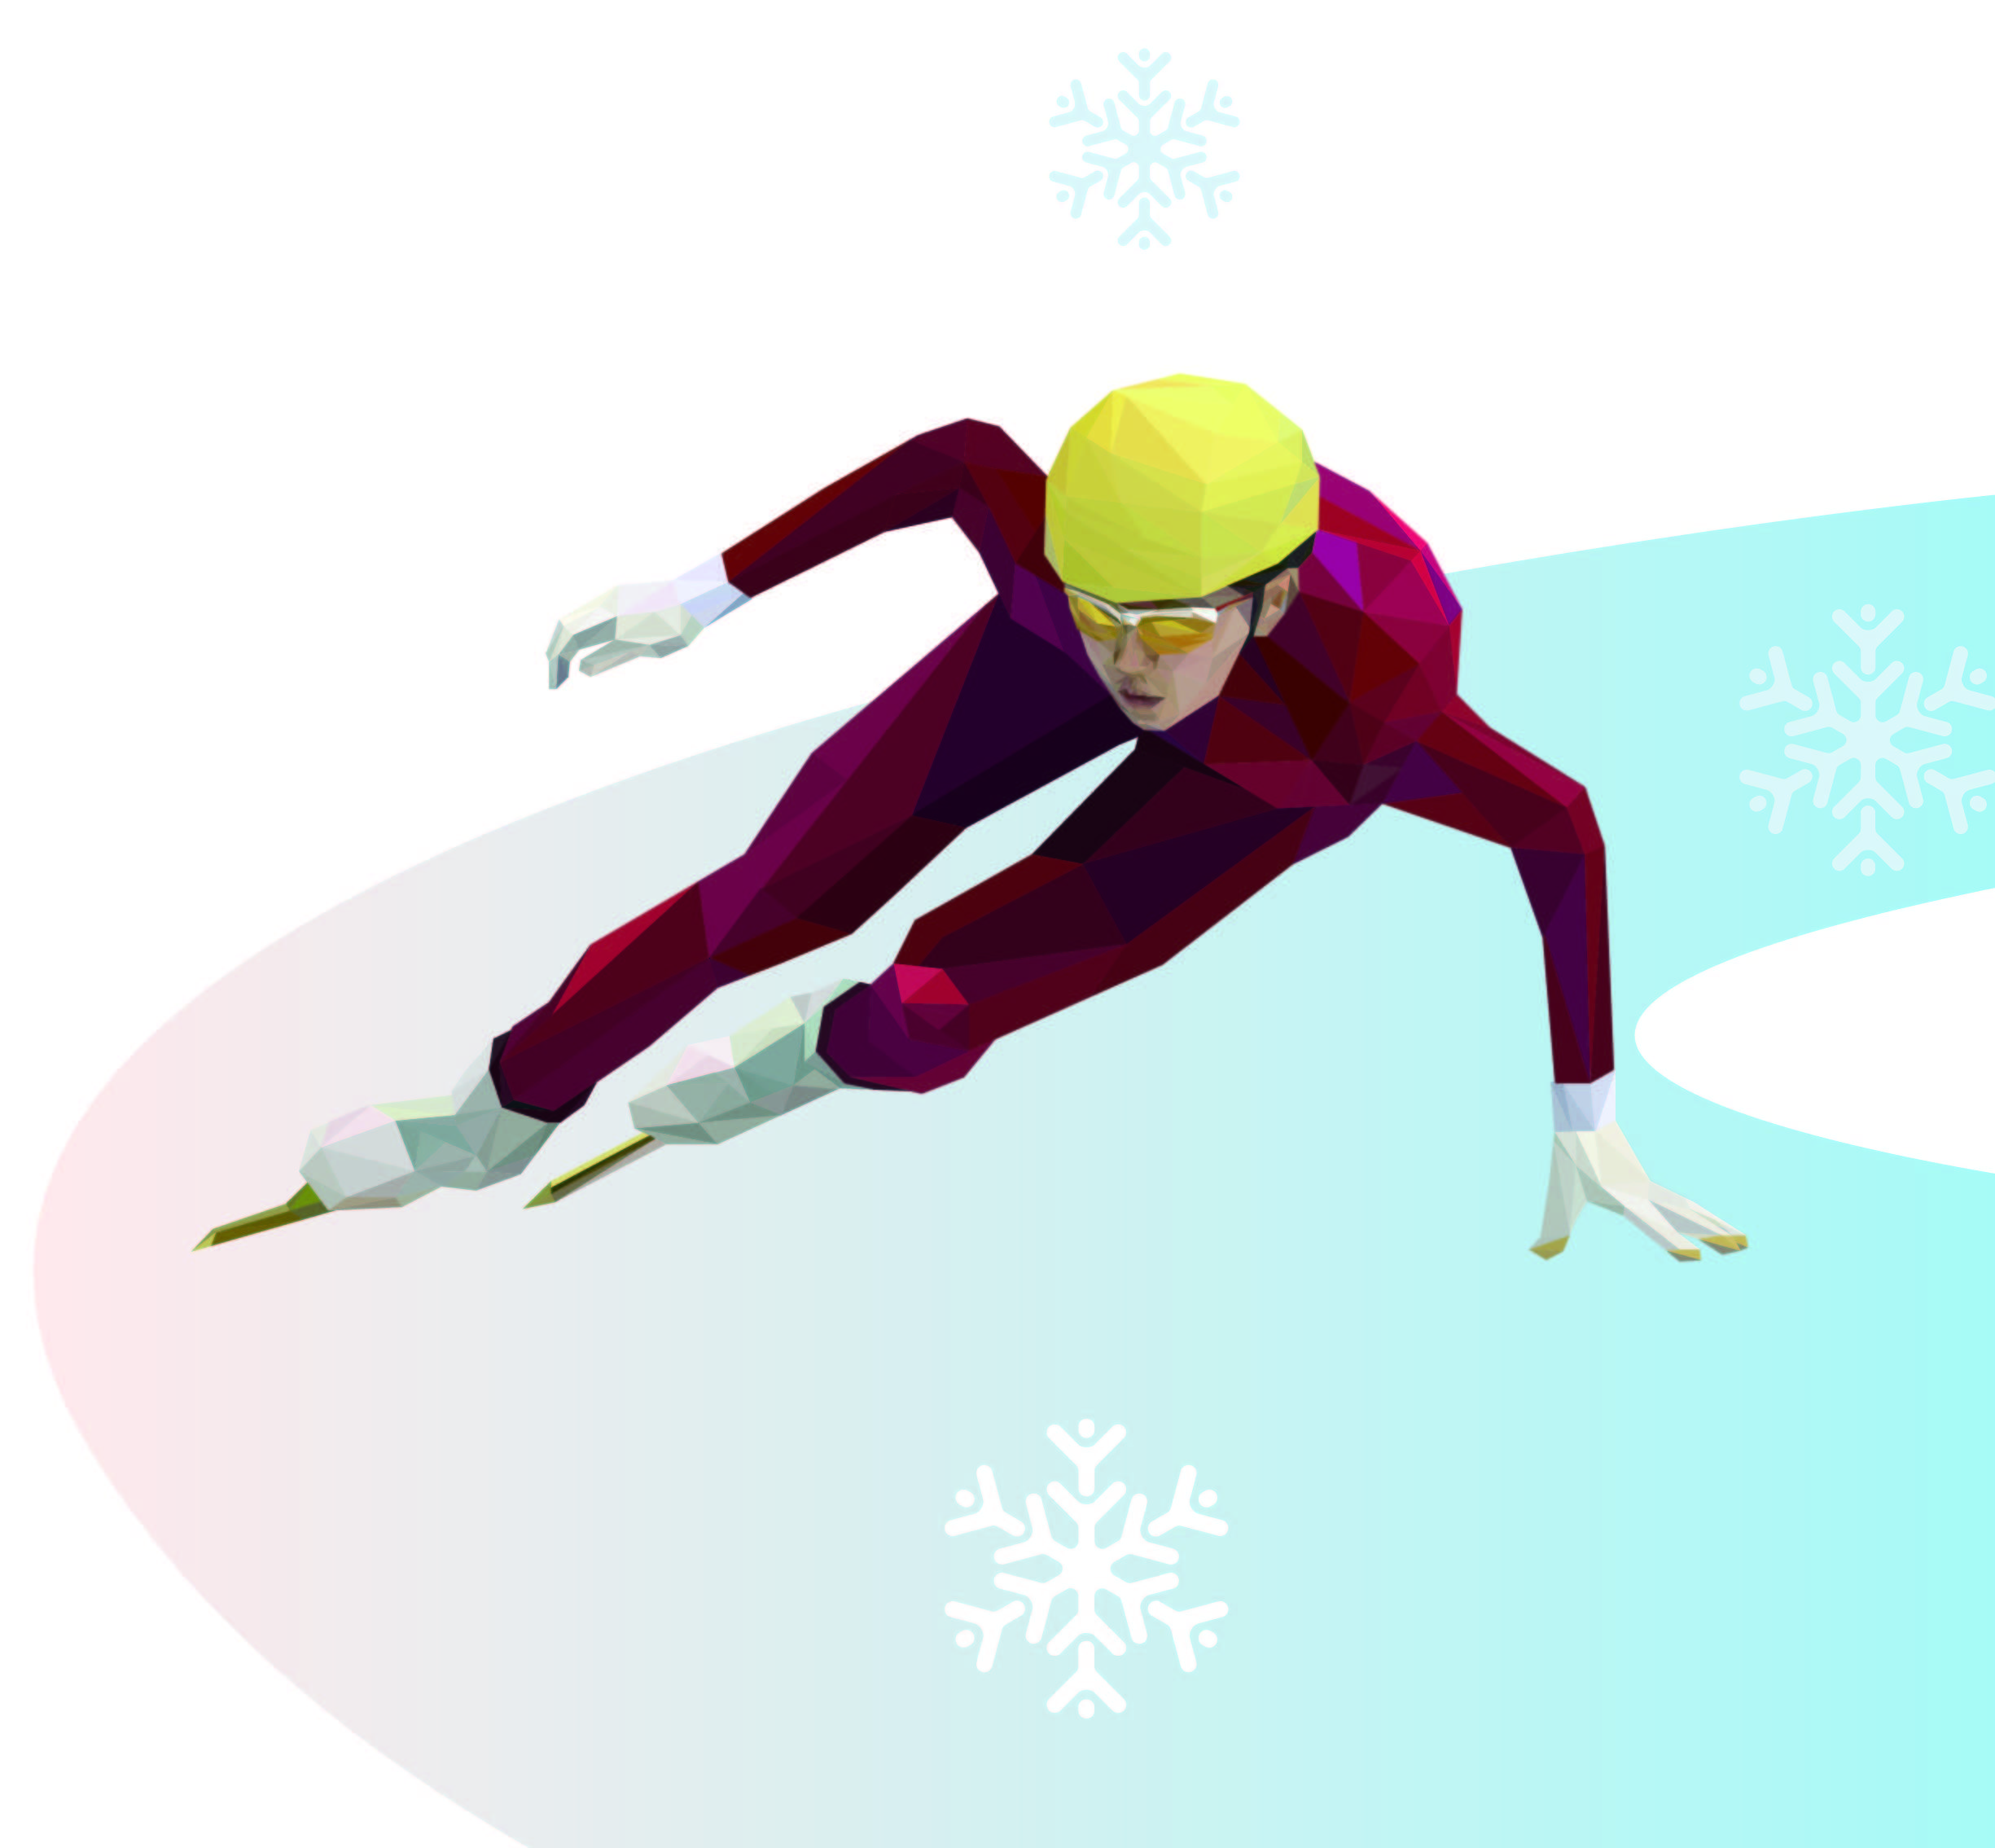 冬奥会短道速滑素材图片